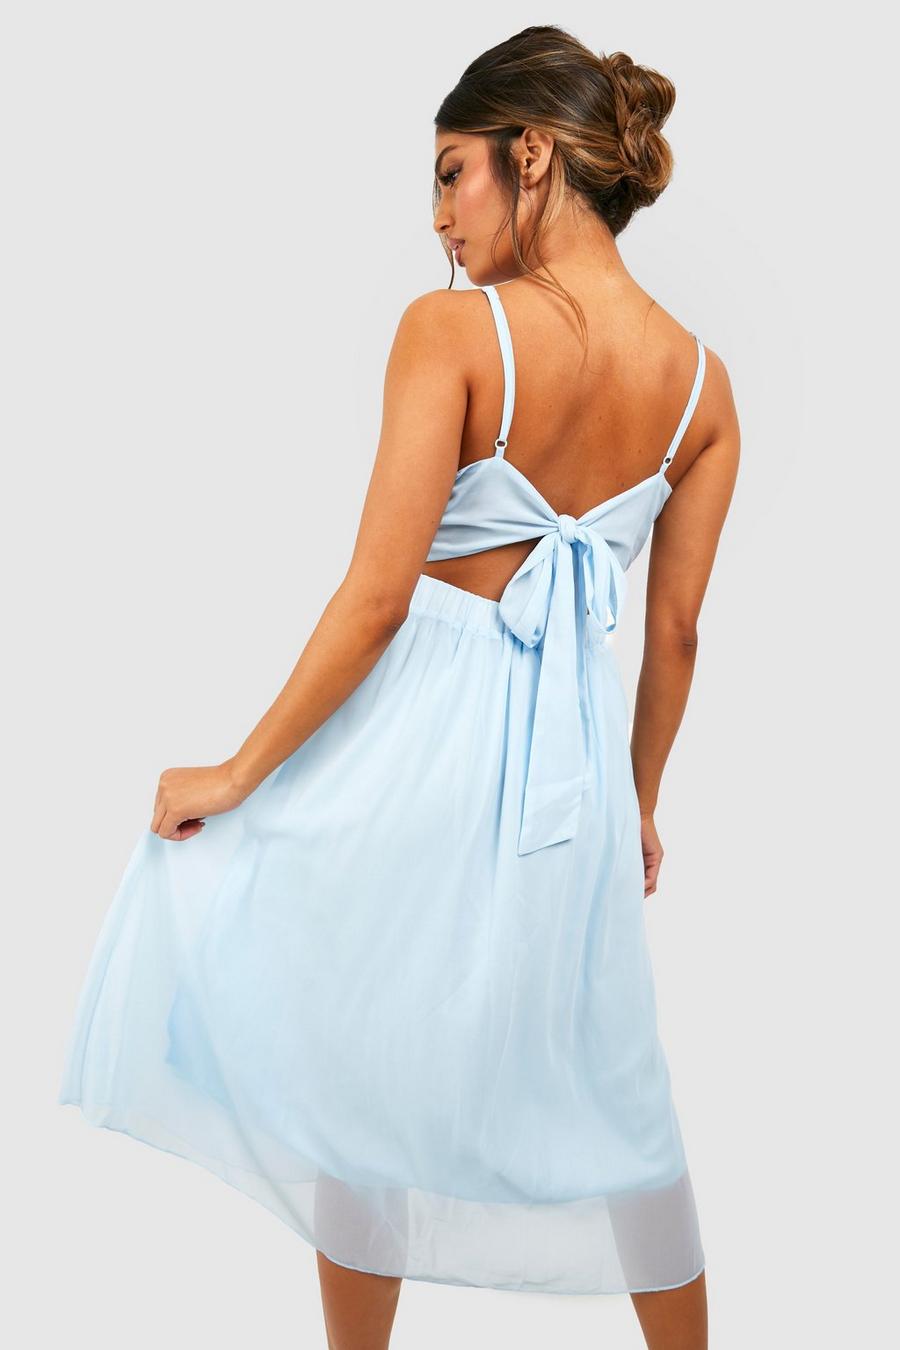 תכלת azzurro שמלת מידי סקייטר מבד שיפון לשושבינה עם קשירה מאחור image number 1